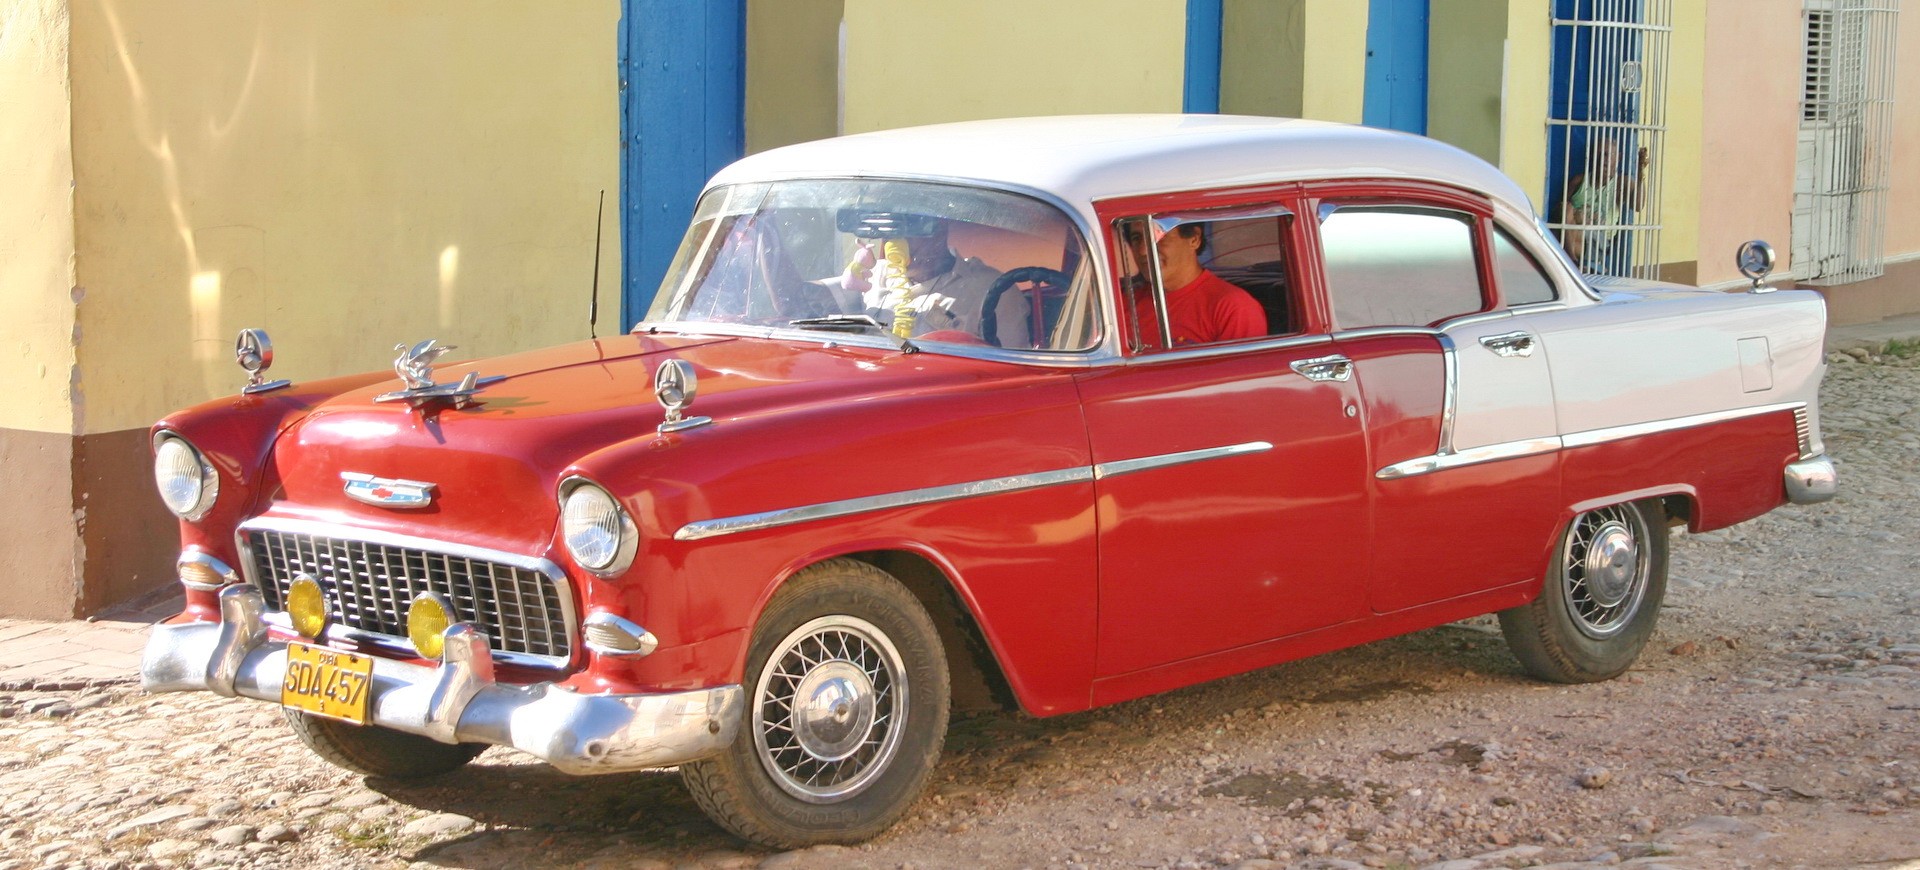 Une vieille voiture américaine à Trinidad